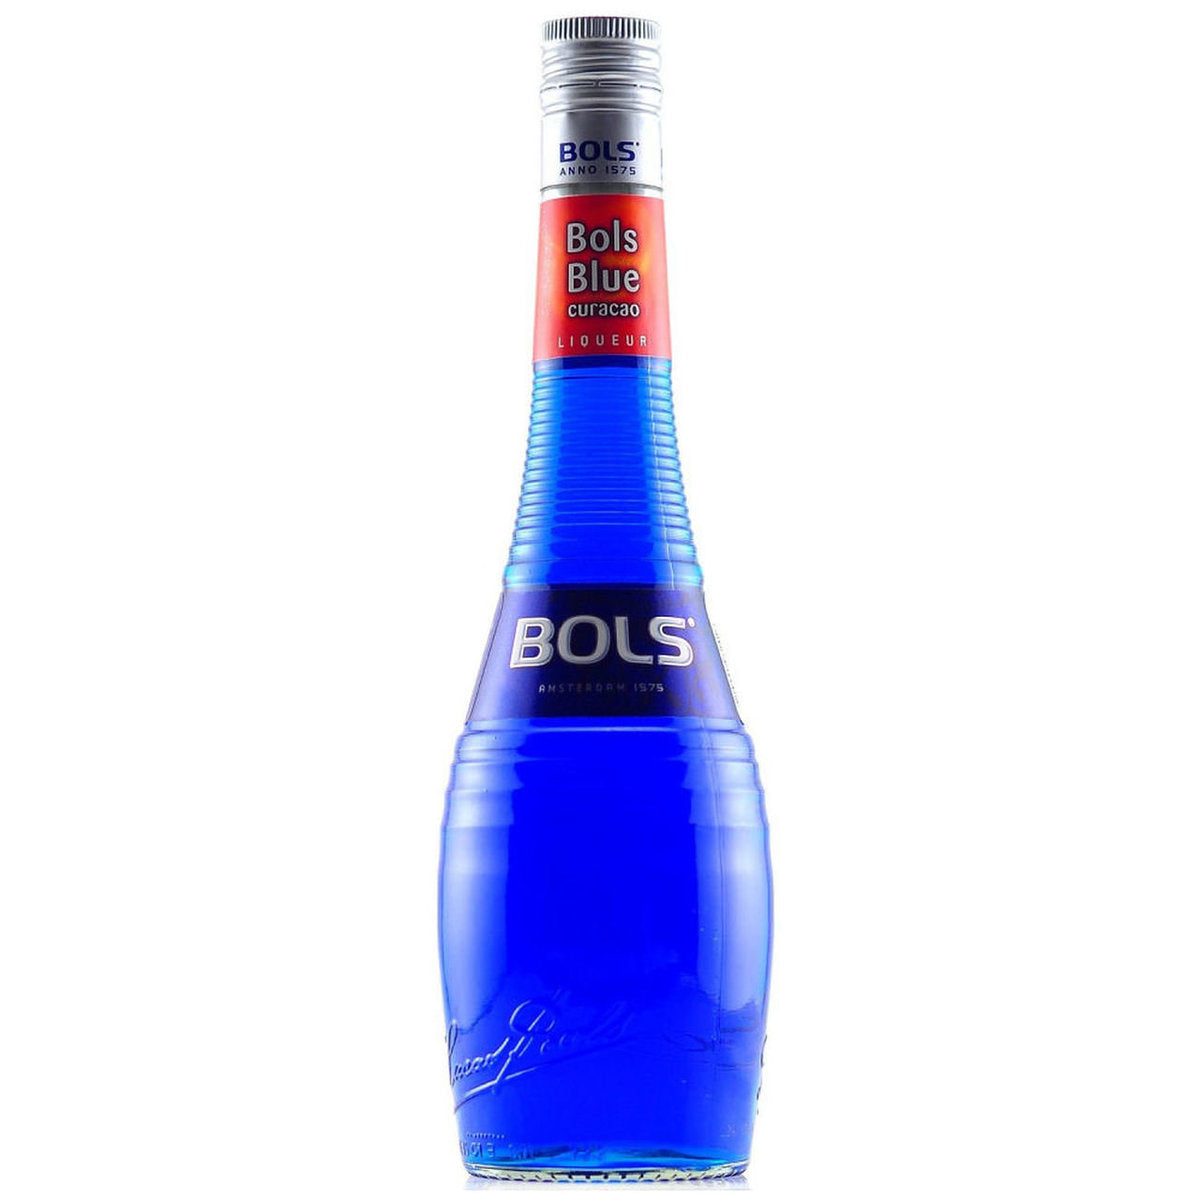 Bols Blue Curacao 藍橙酒 700毫升